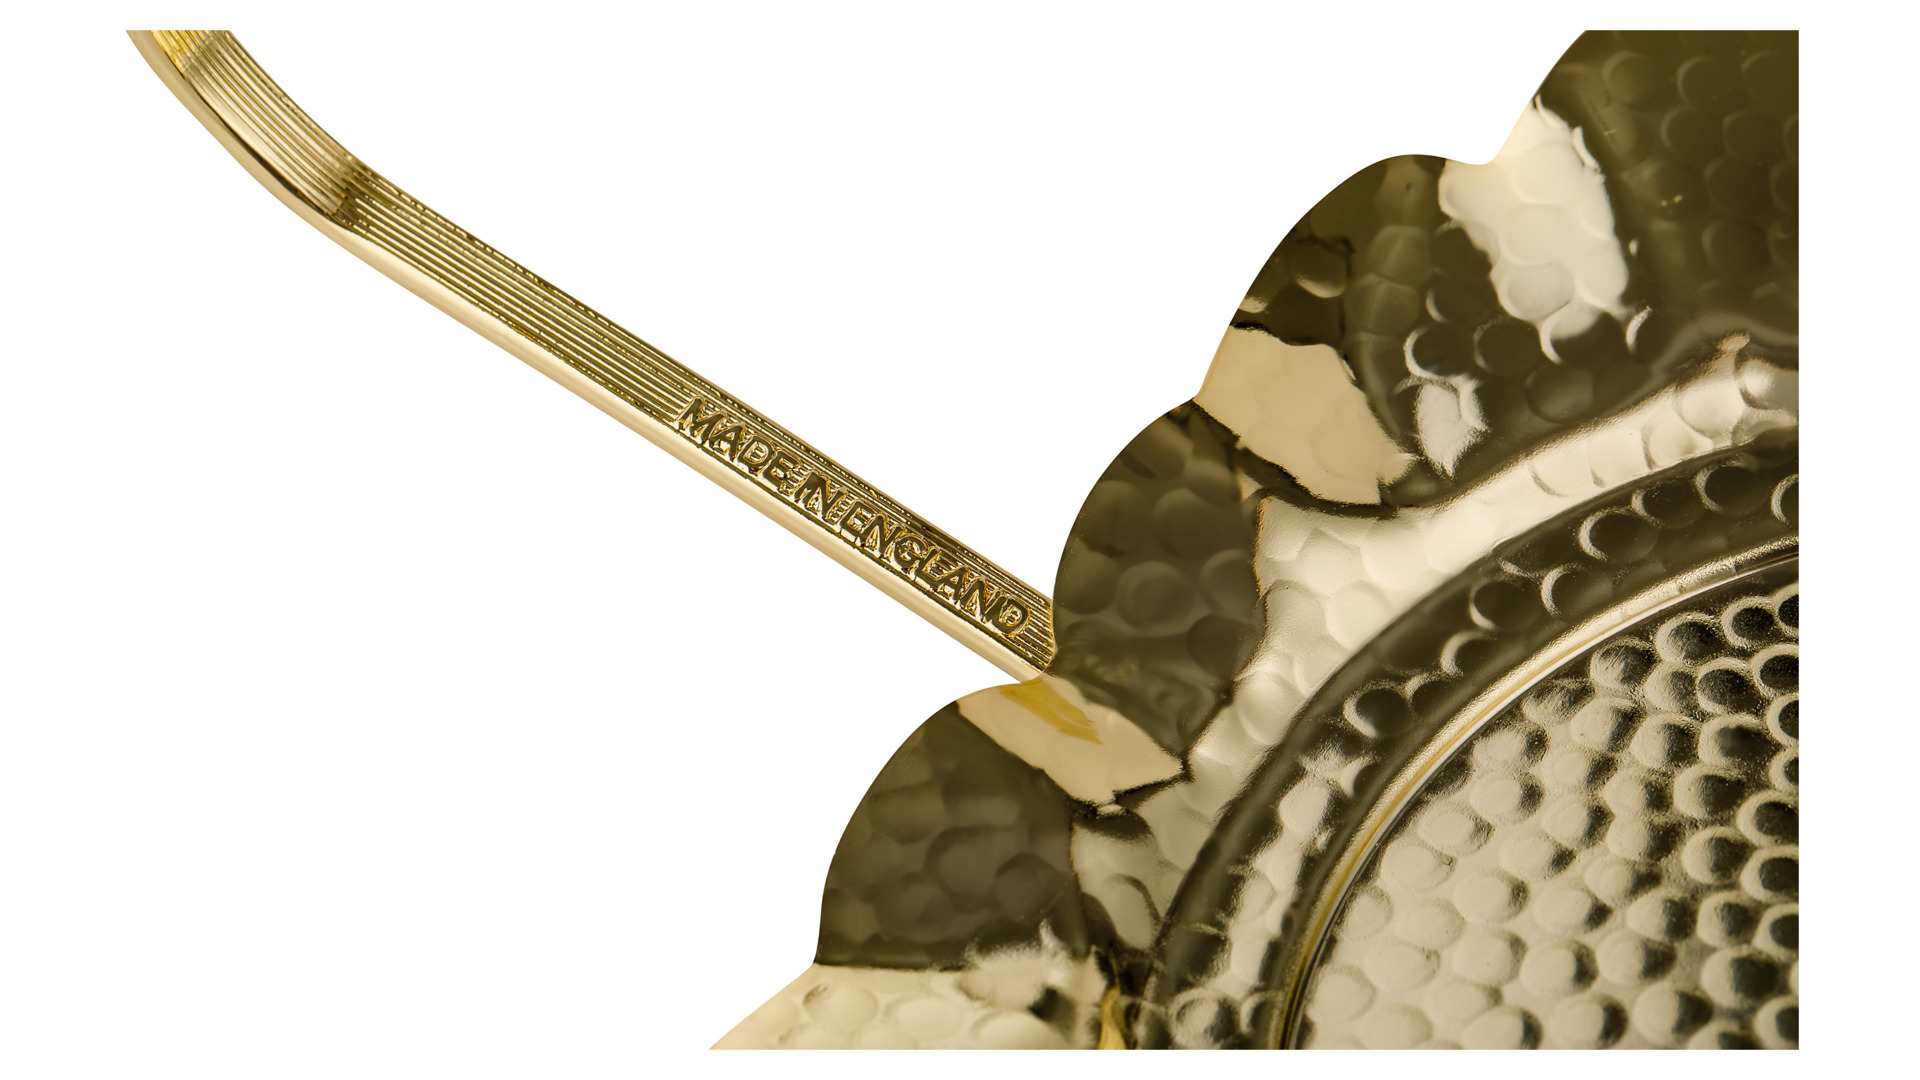 Вазочка для варенья на подставке с ложкой Queen Anne 17,5см, золотой цвет